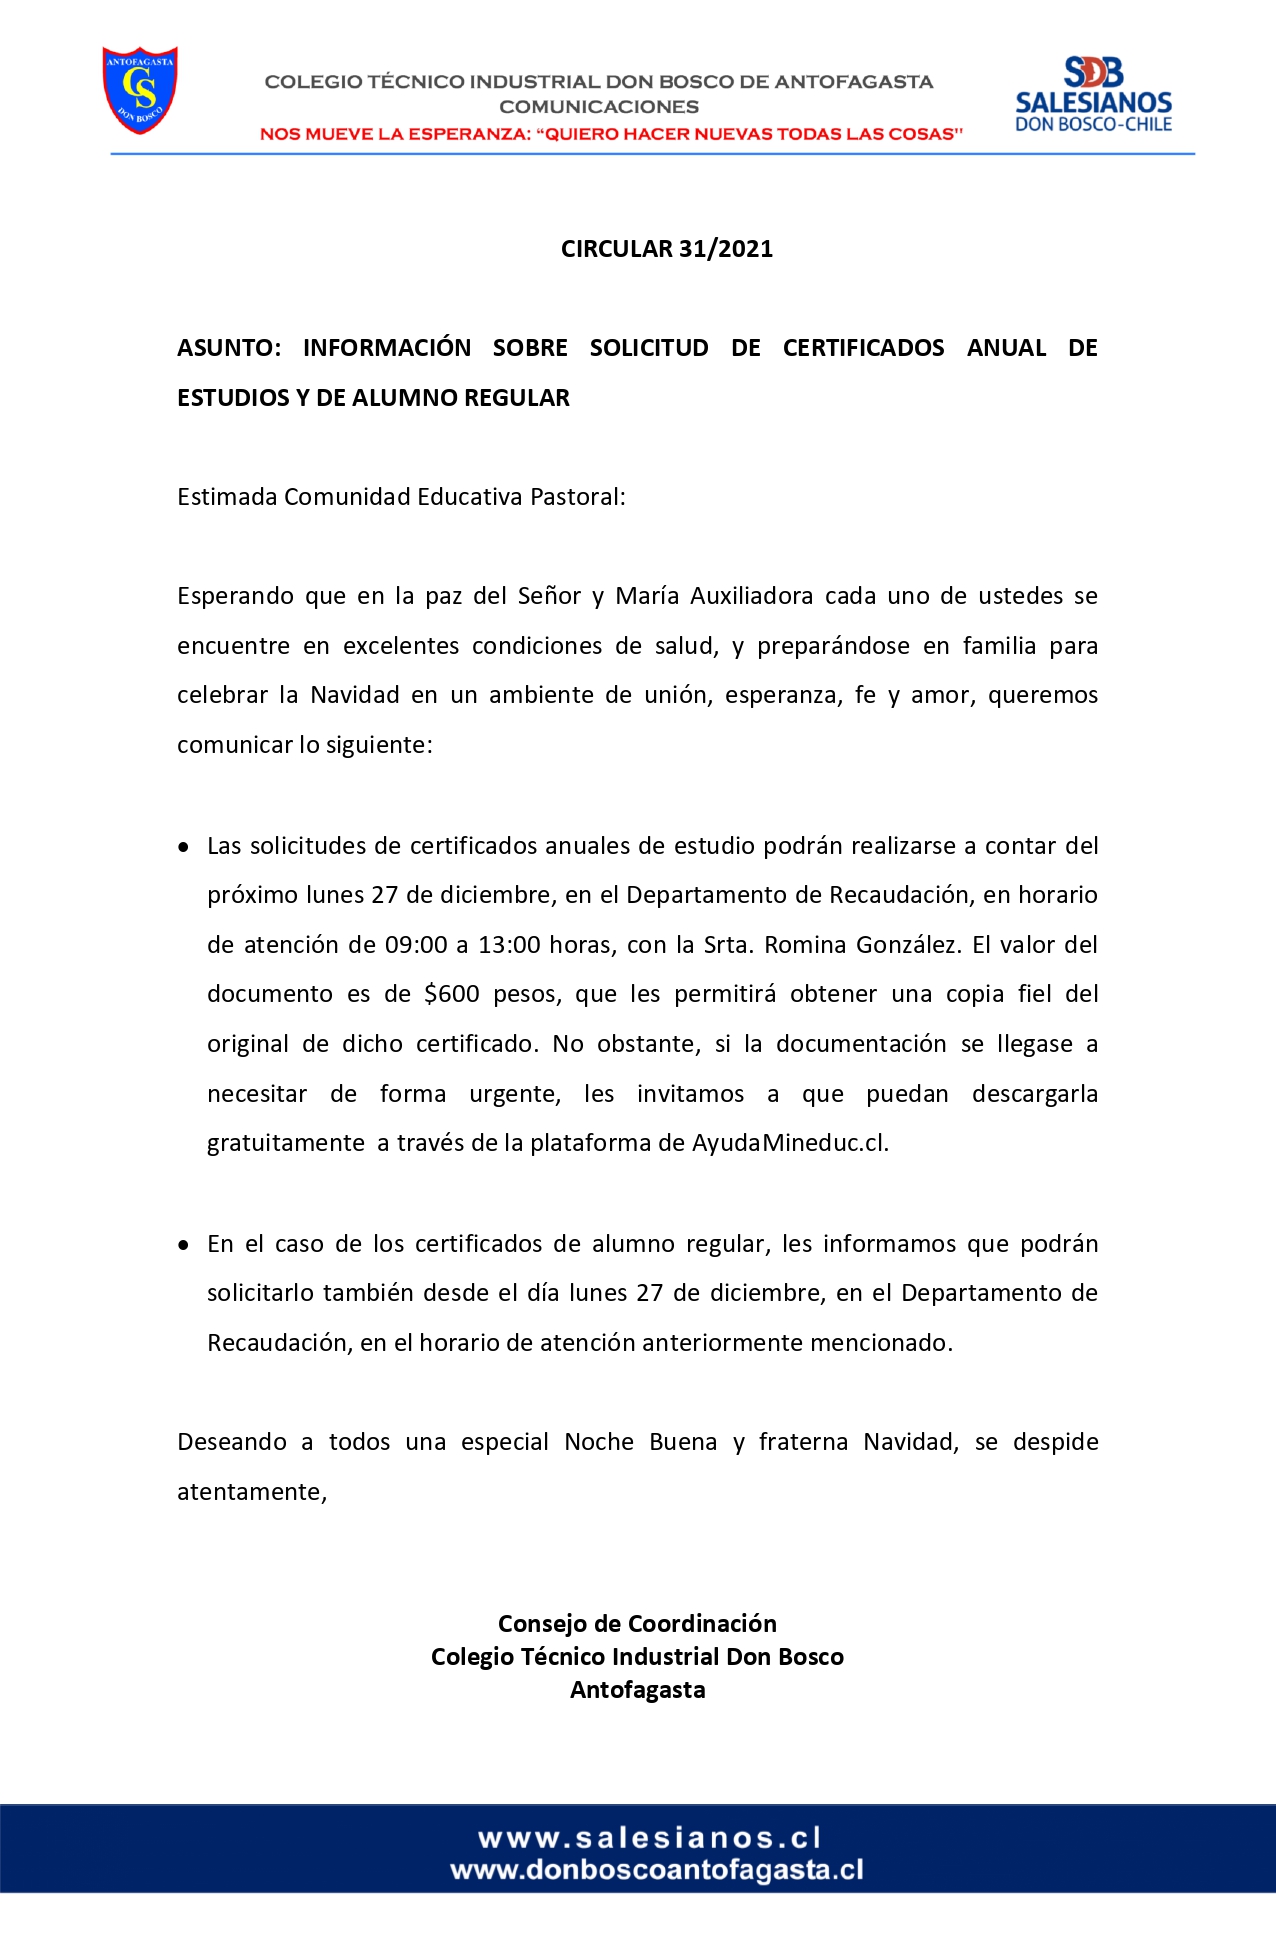 CIRCULAR Nº31 INFORMA SOBRE SOLICITUD DE CERTIFICADOS ANUAL DE ESTUDIOS Y DE ALUMNO REGULAR page 0001